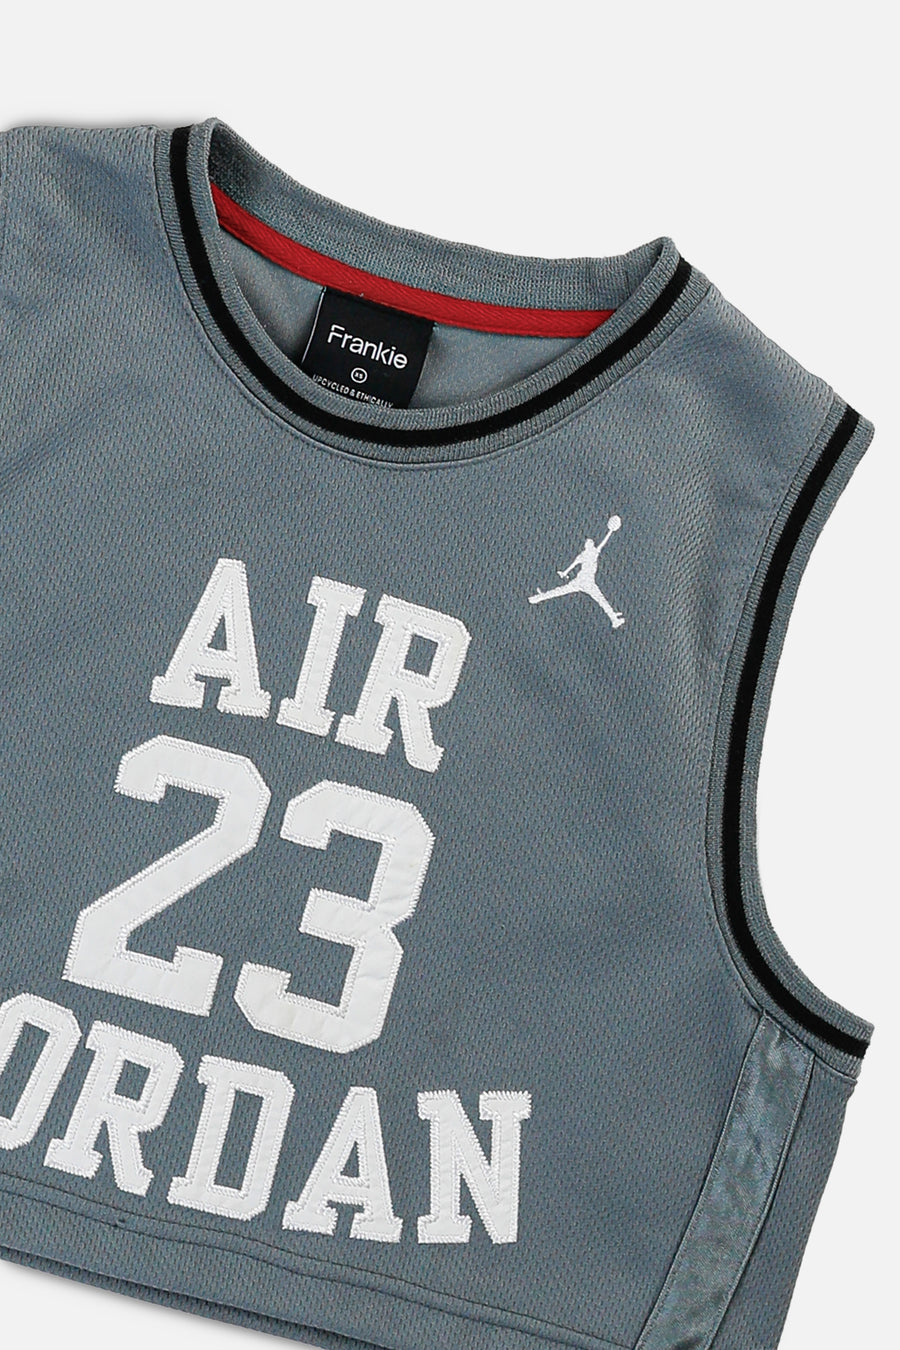 Rework Air Jordan Crop Jersey - XS